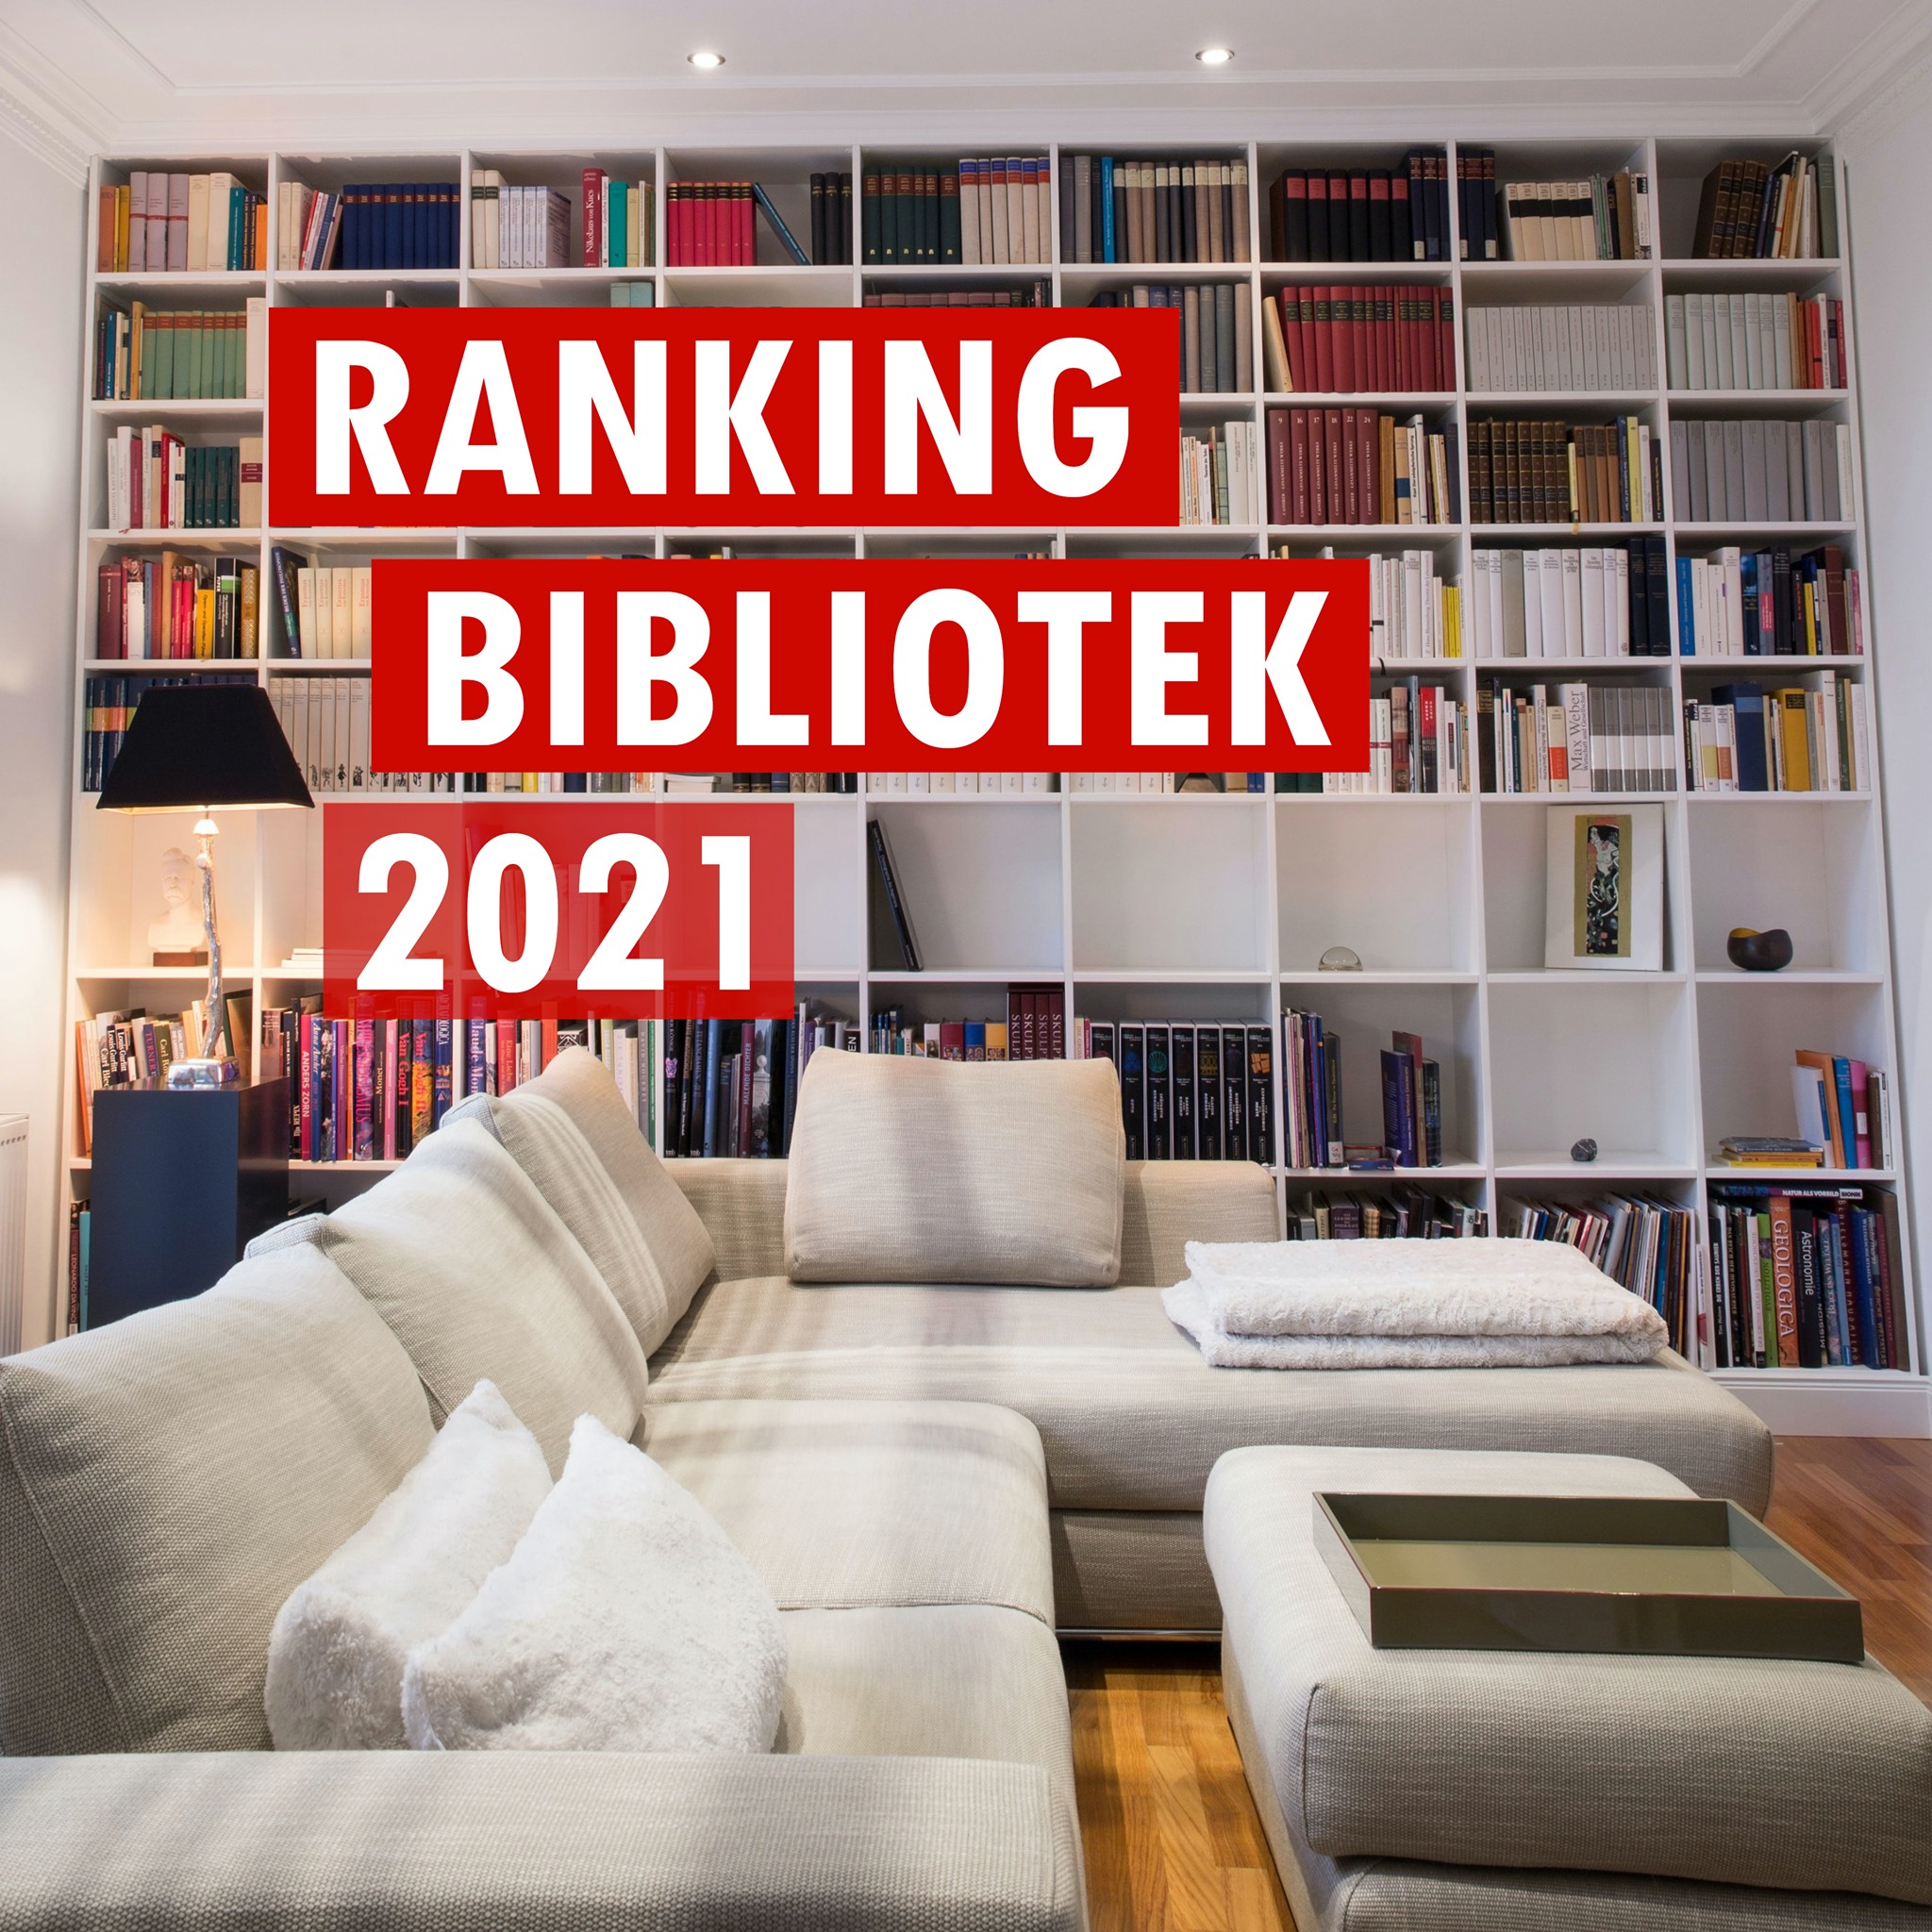 Ranking Bibliotek 2021